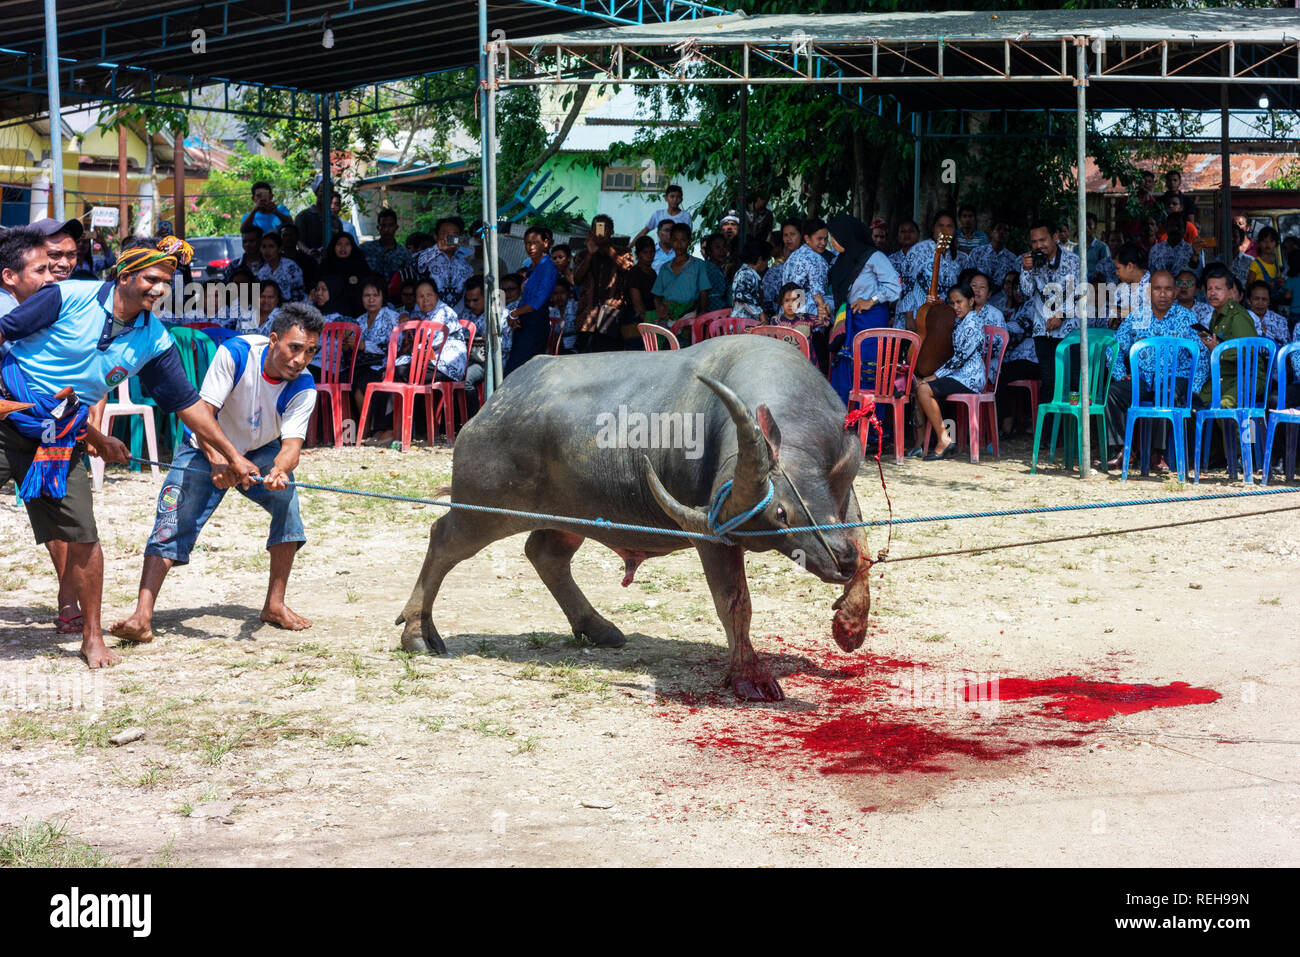 Un buffle luttes, avec du sang jaillissant, après avoir sa gorge tranchée dans le cadre d'une cérémonie funèbre. Banque D'Images